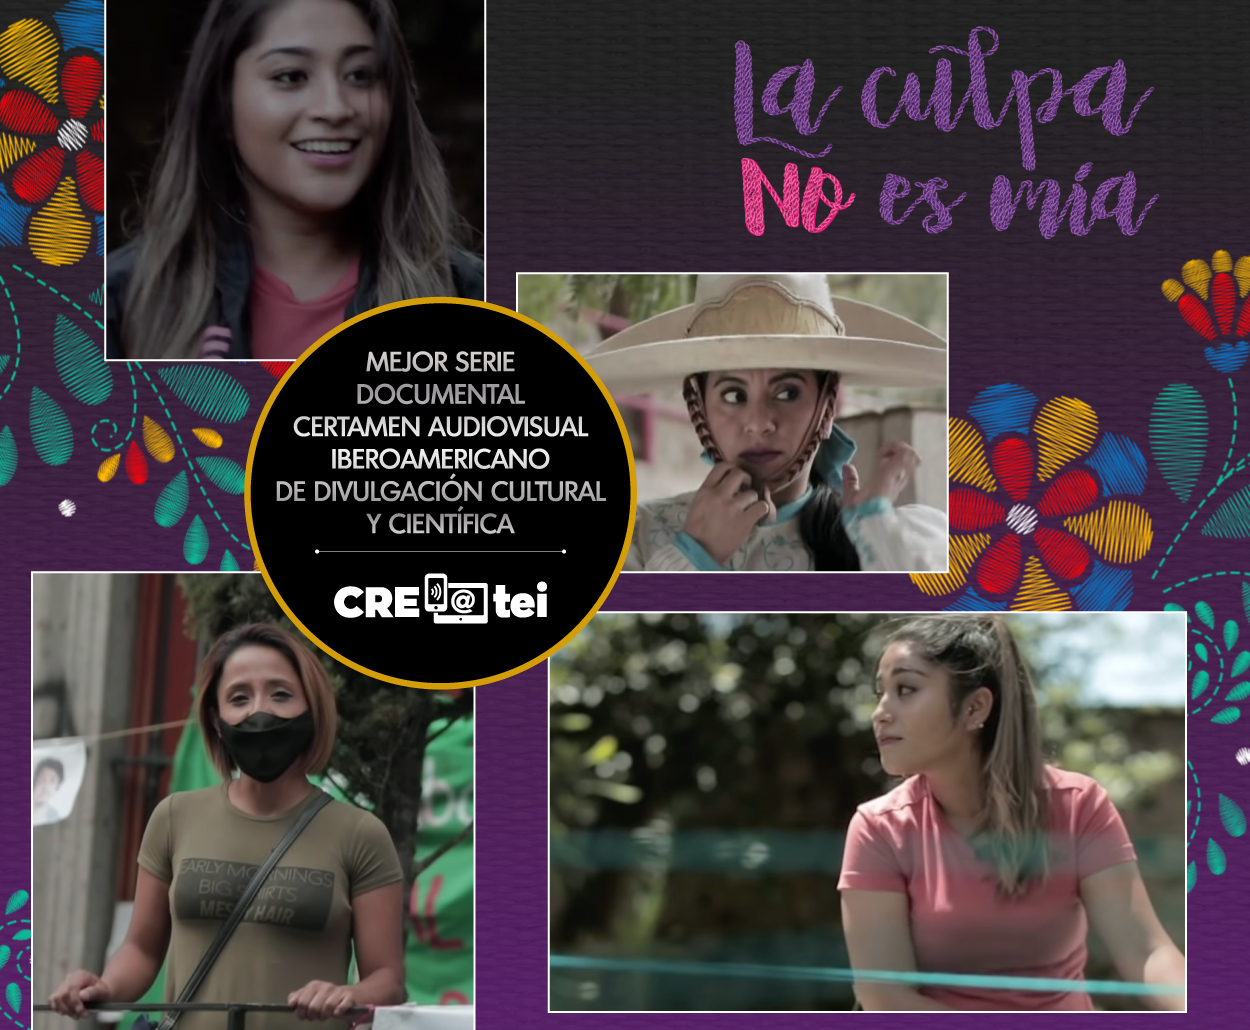 Premian a la serie “La Culpa no es Mía”, del Canal Catorce del SPR, como Mejor Serie Documental del Certamen Audiovisual Iberoamericano de Divulgación Cultural y Científica CRE@tei.